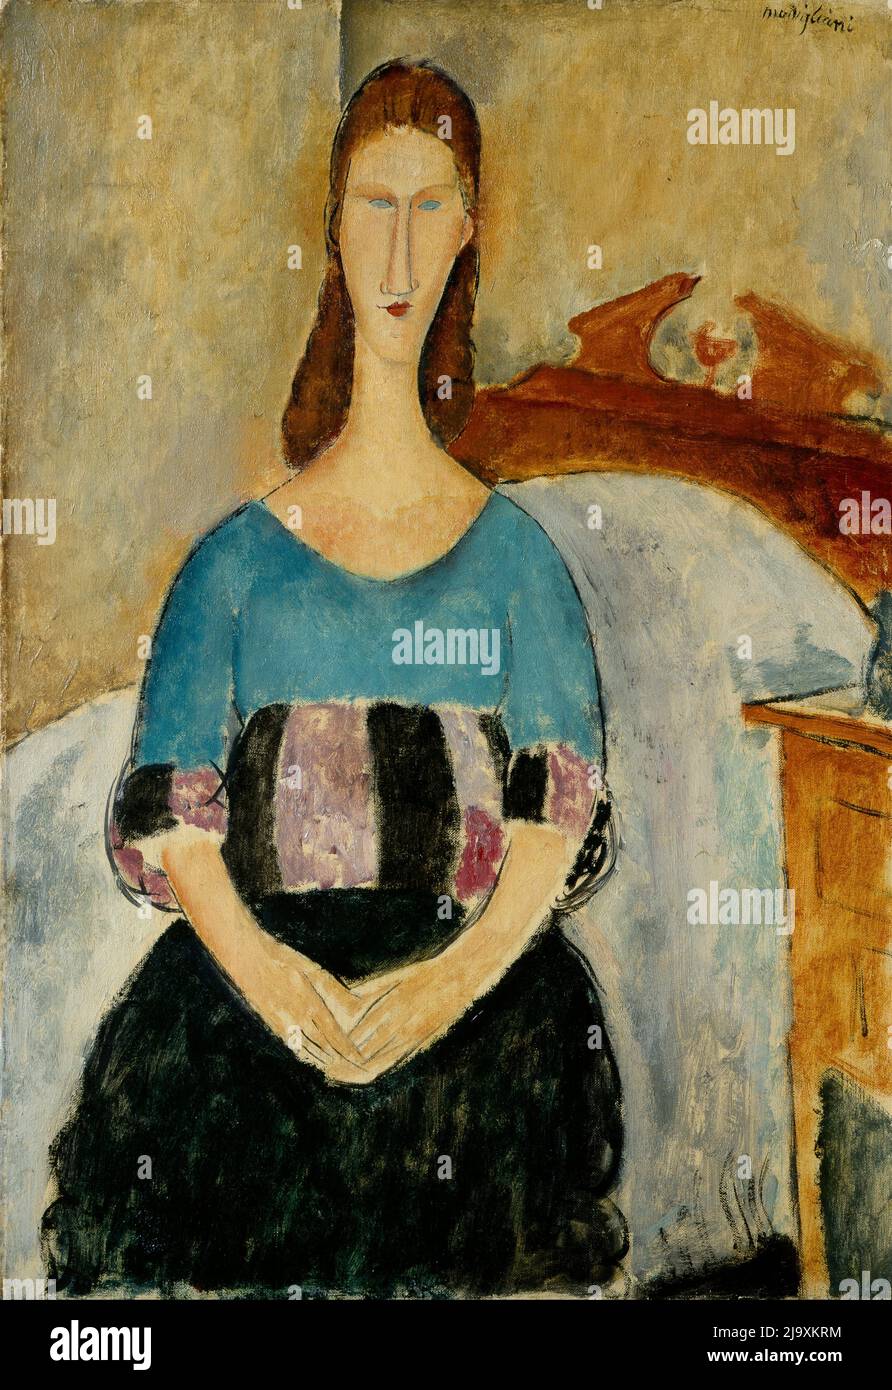 Titel: Porträt von Jeanne Hebuterne, sitzend Ersteller: Amedeo Modigliani Datum: 1918 Größe: 55 x 38 cm Medium: Öl auf Leinwand Ort: The Israel Museum, Jerusalem, Stockfoto